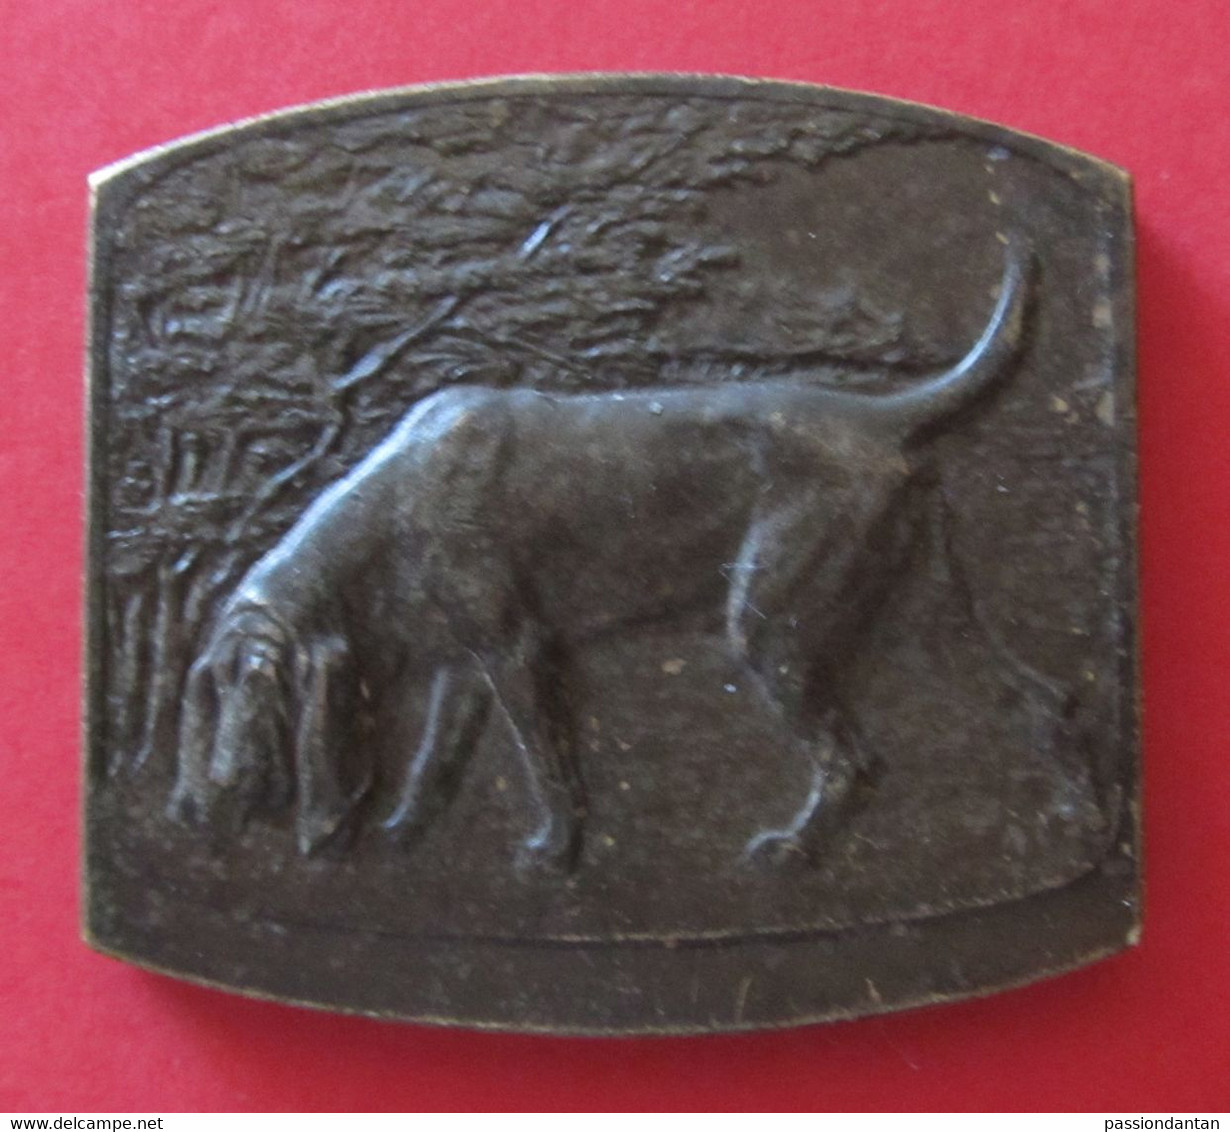 Médaille En Métal Jaune Signée Godefroid Devreese - Belgique - Société Royale Saint-Hubert - 1882 - 1932 - Professionnels / De Société